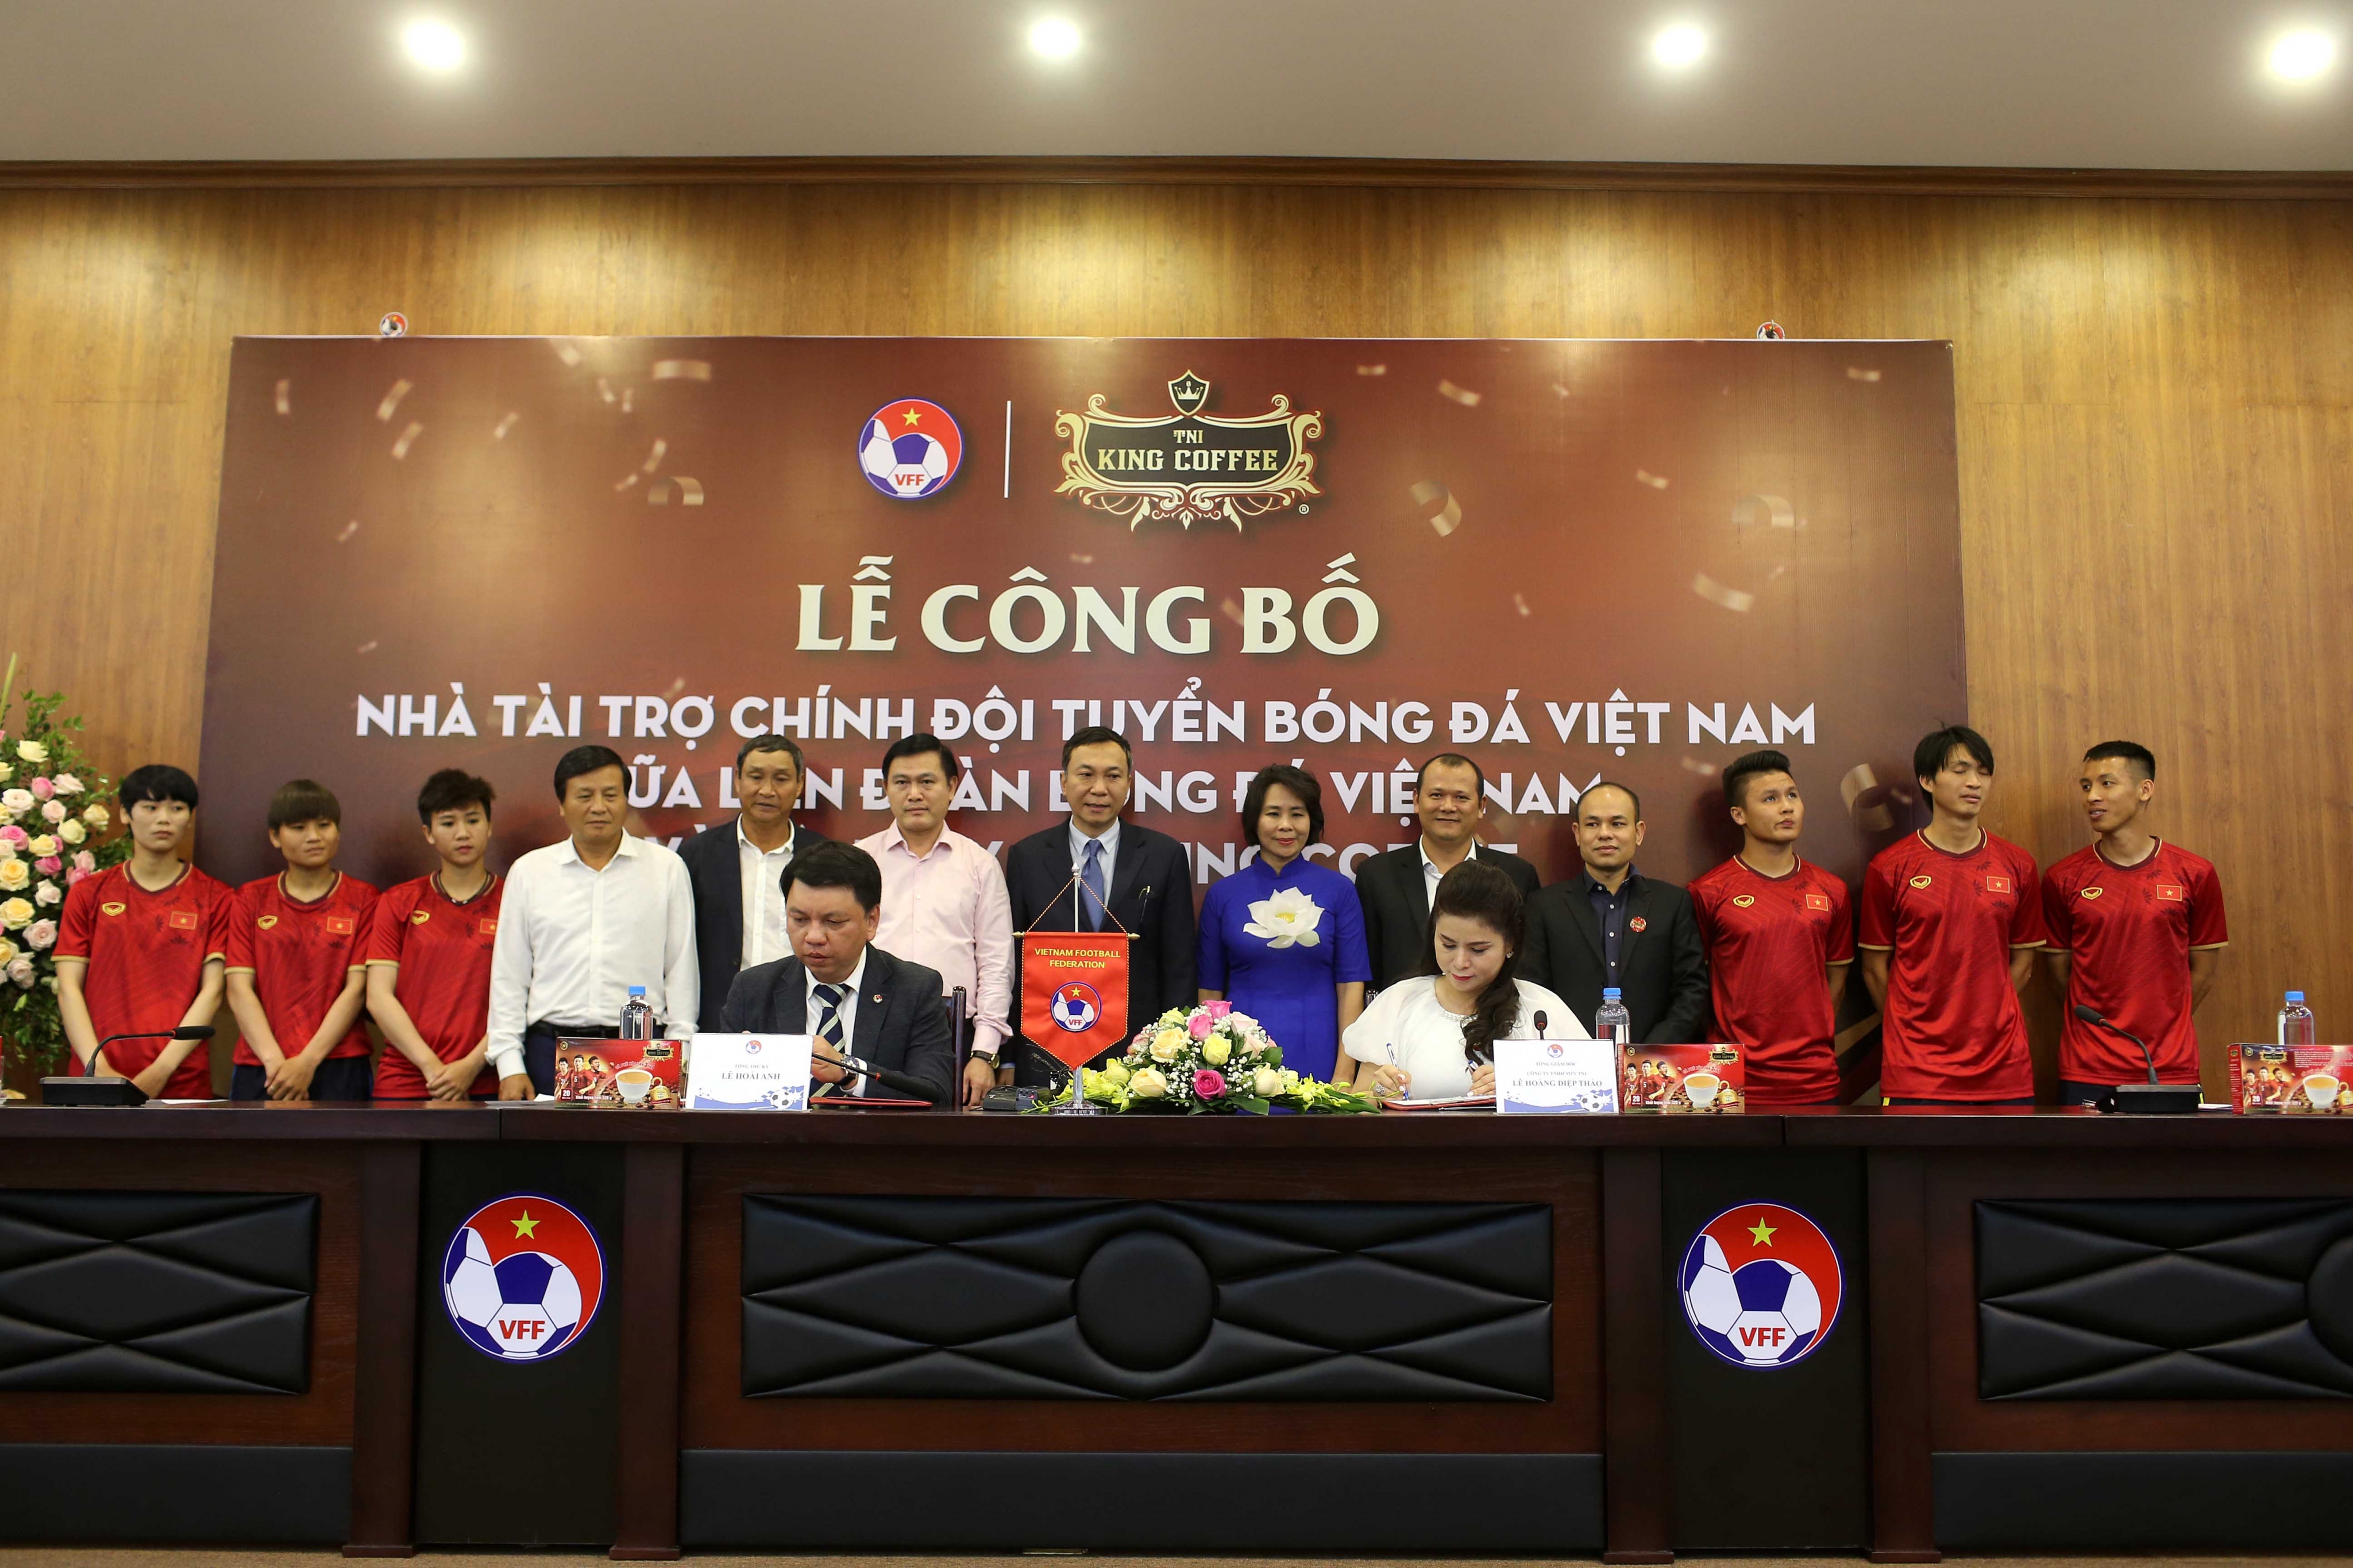 ĐTQG Việt Nam ra mắt nhà trợ chính trong 03 năm liên tiếp